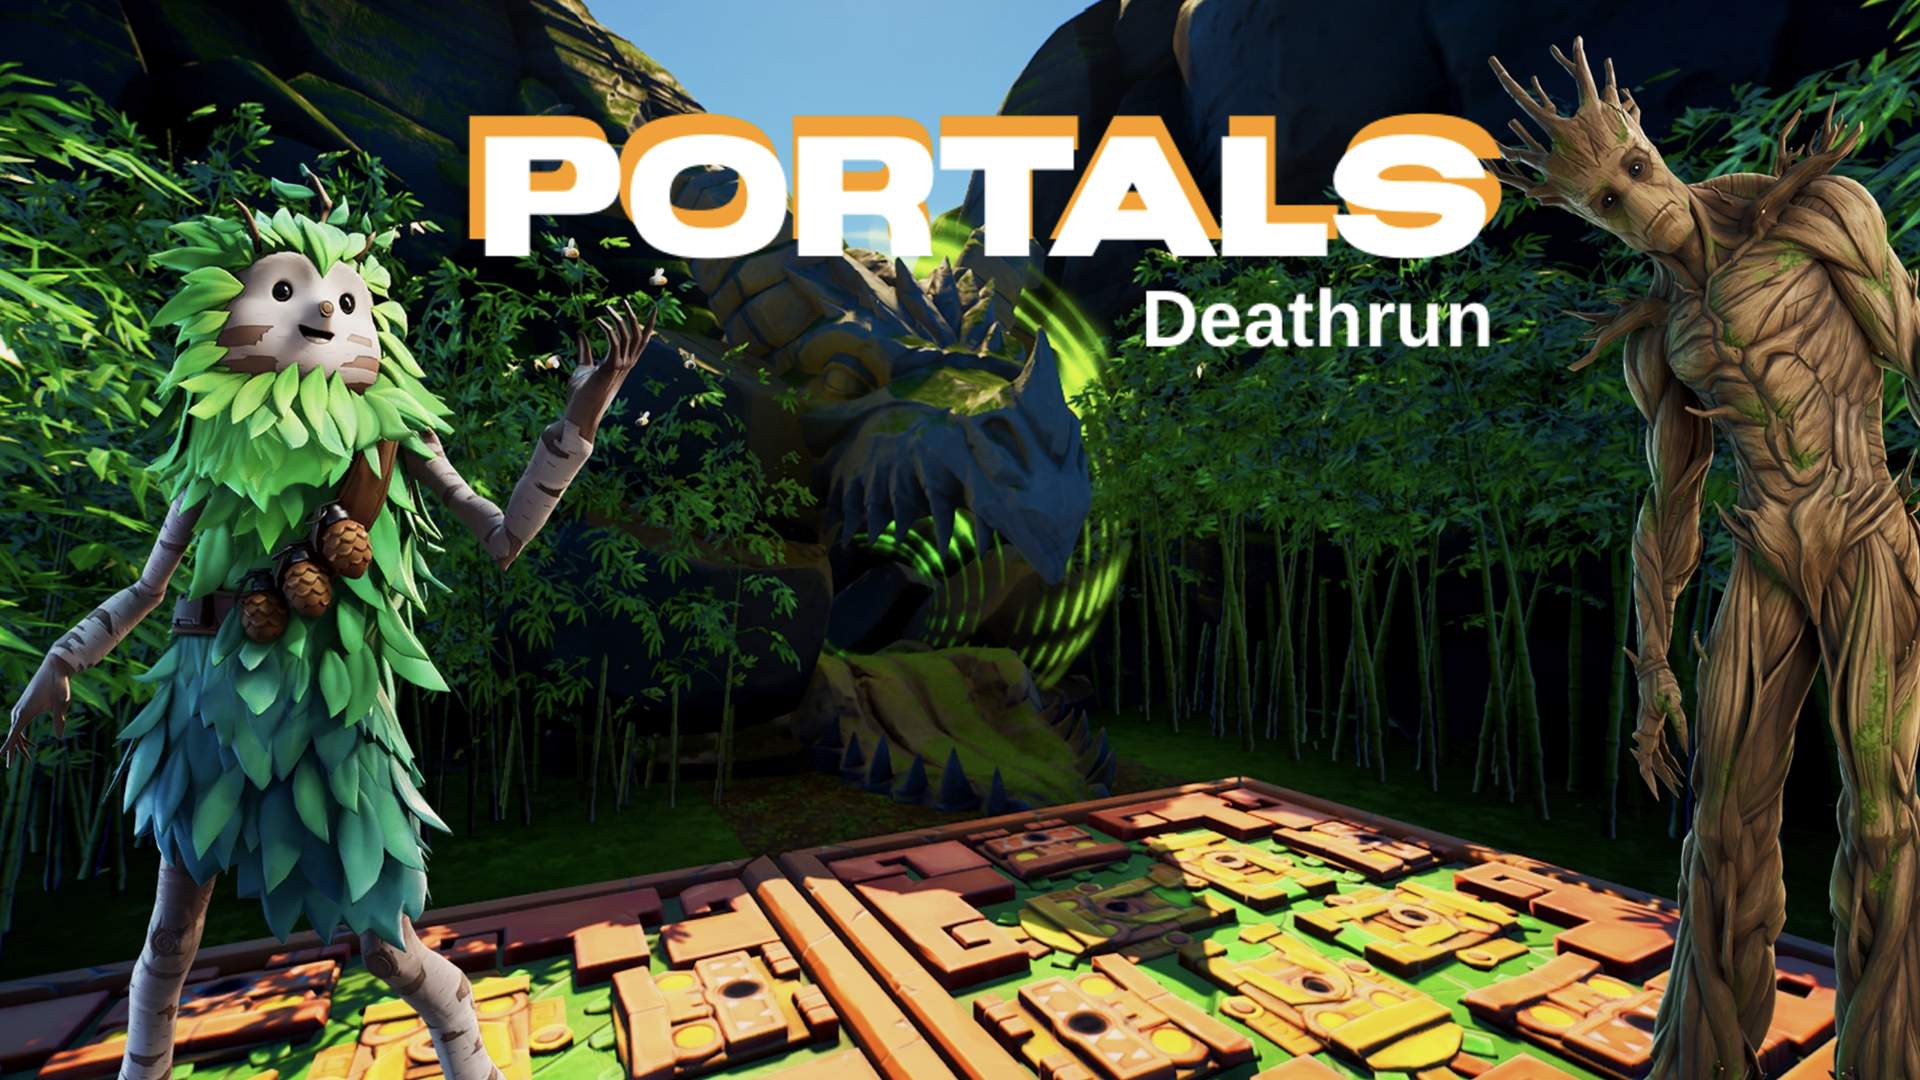 Portals - Deathrun